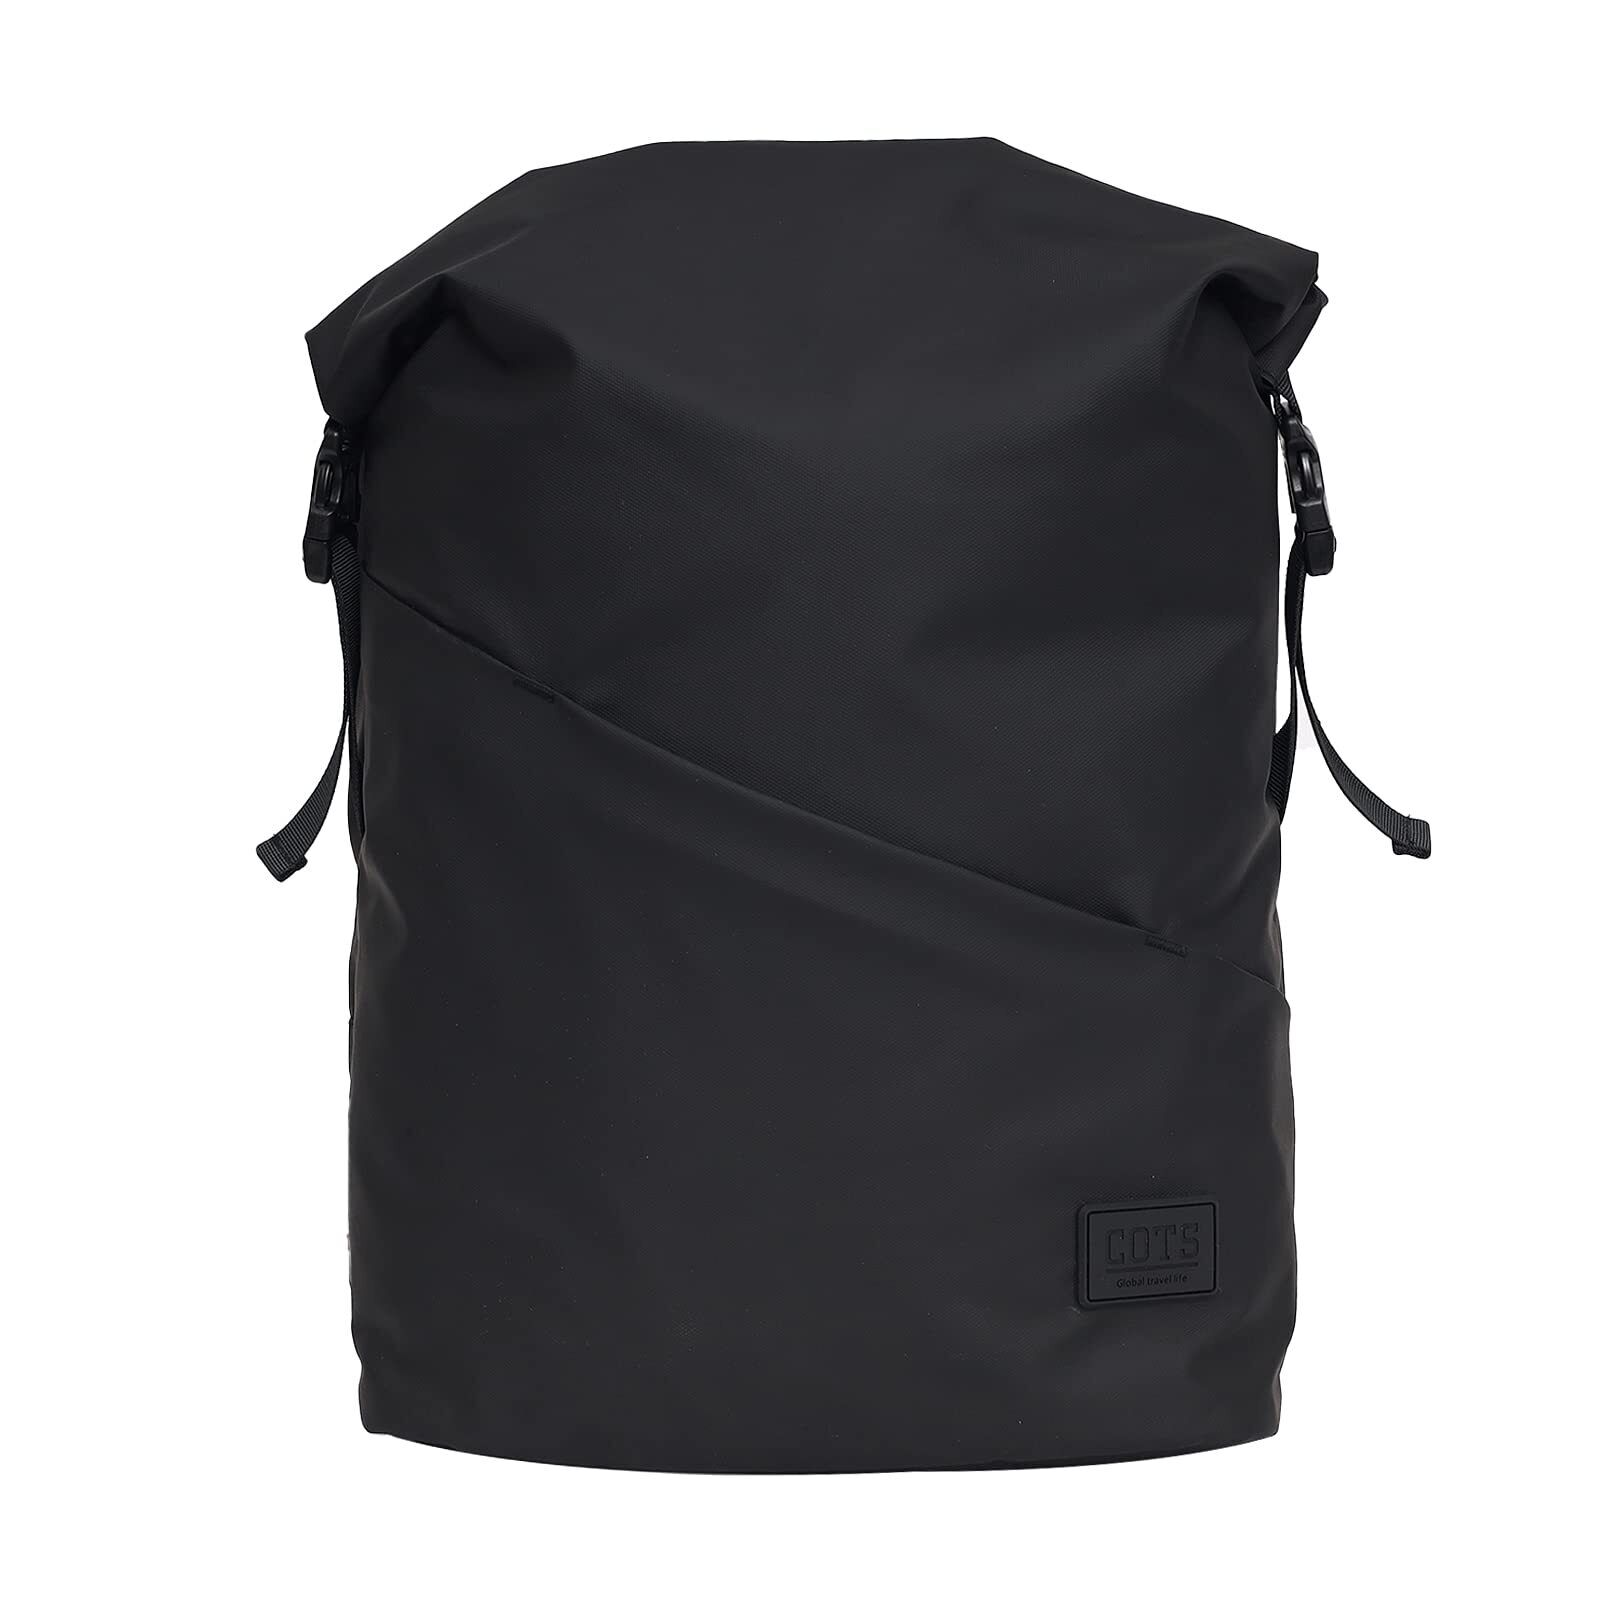 COTS Travel Laptop Backpack, Business Backpack for Men & Women Large, Black 